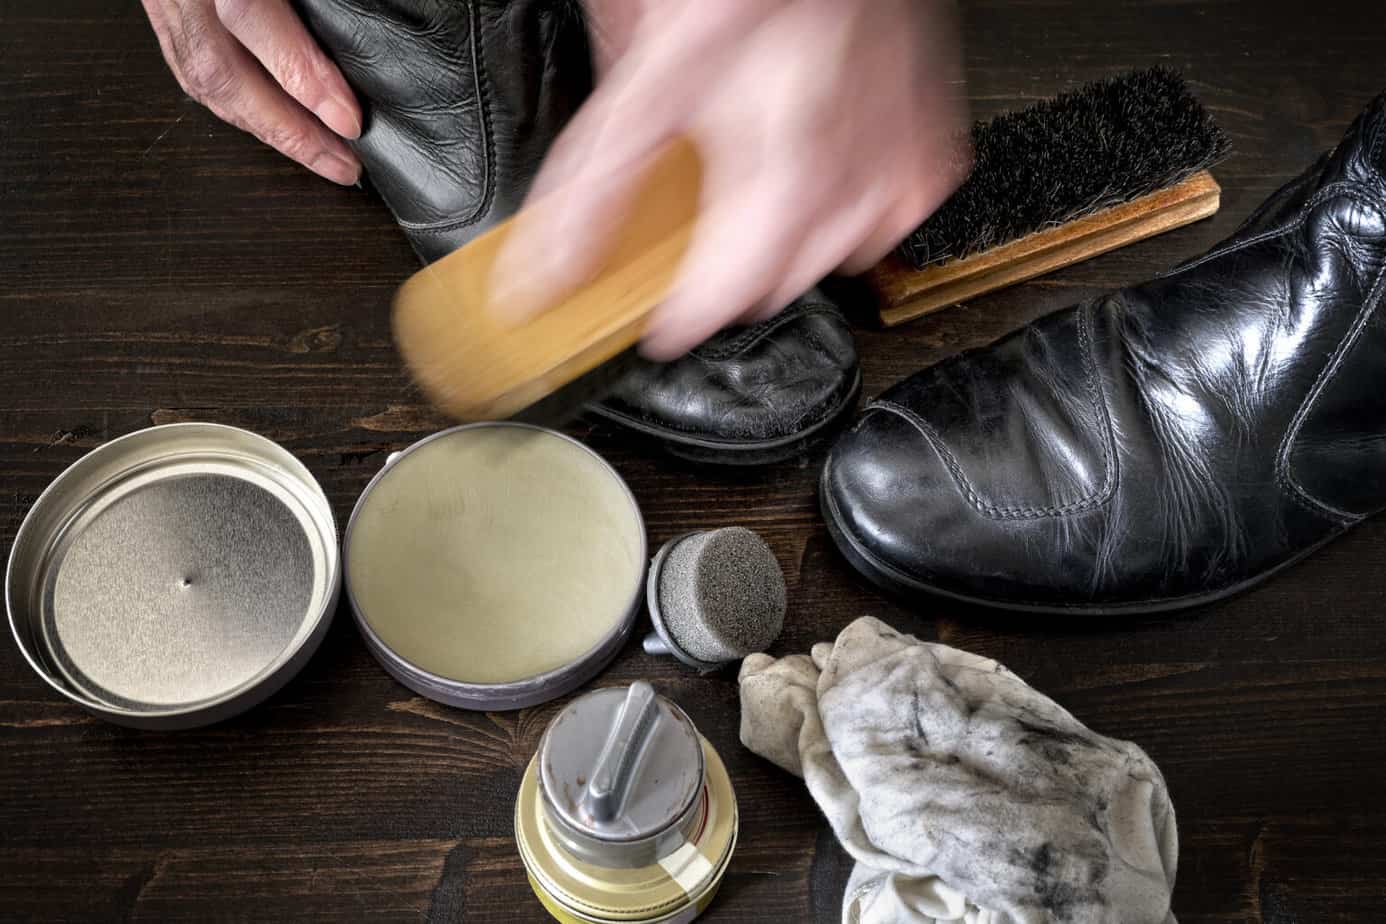 using saddle soap on leather sofa